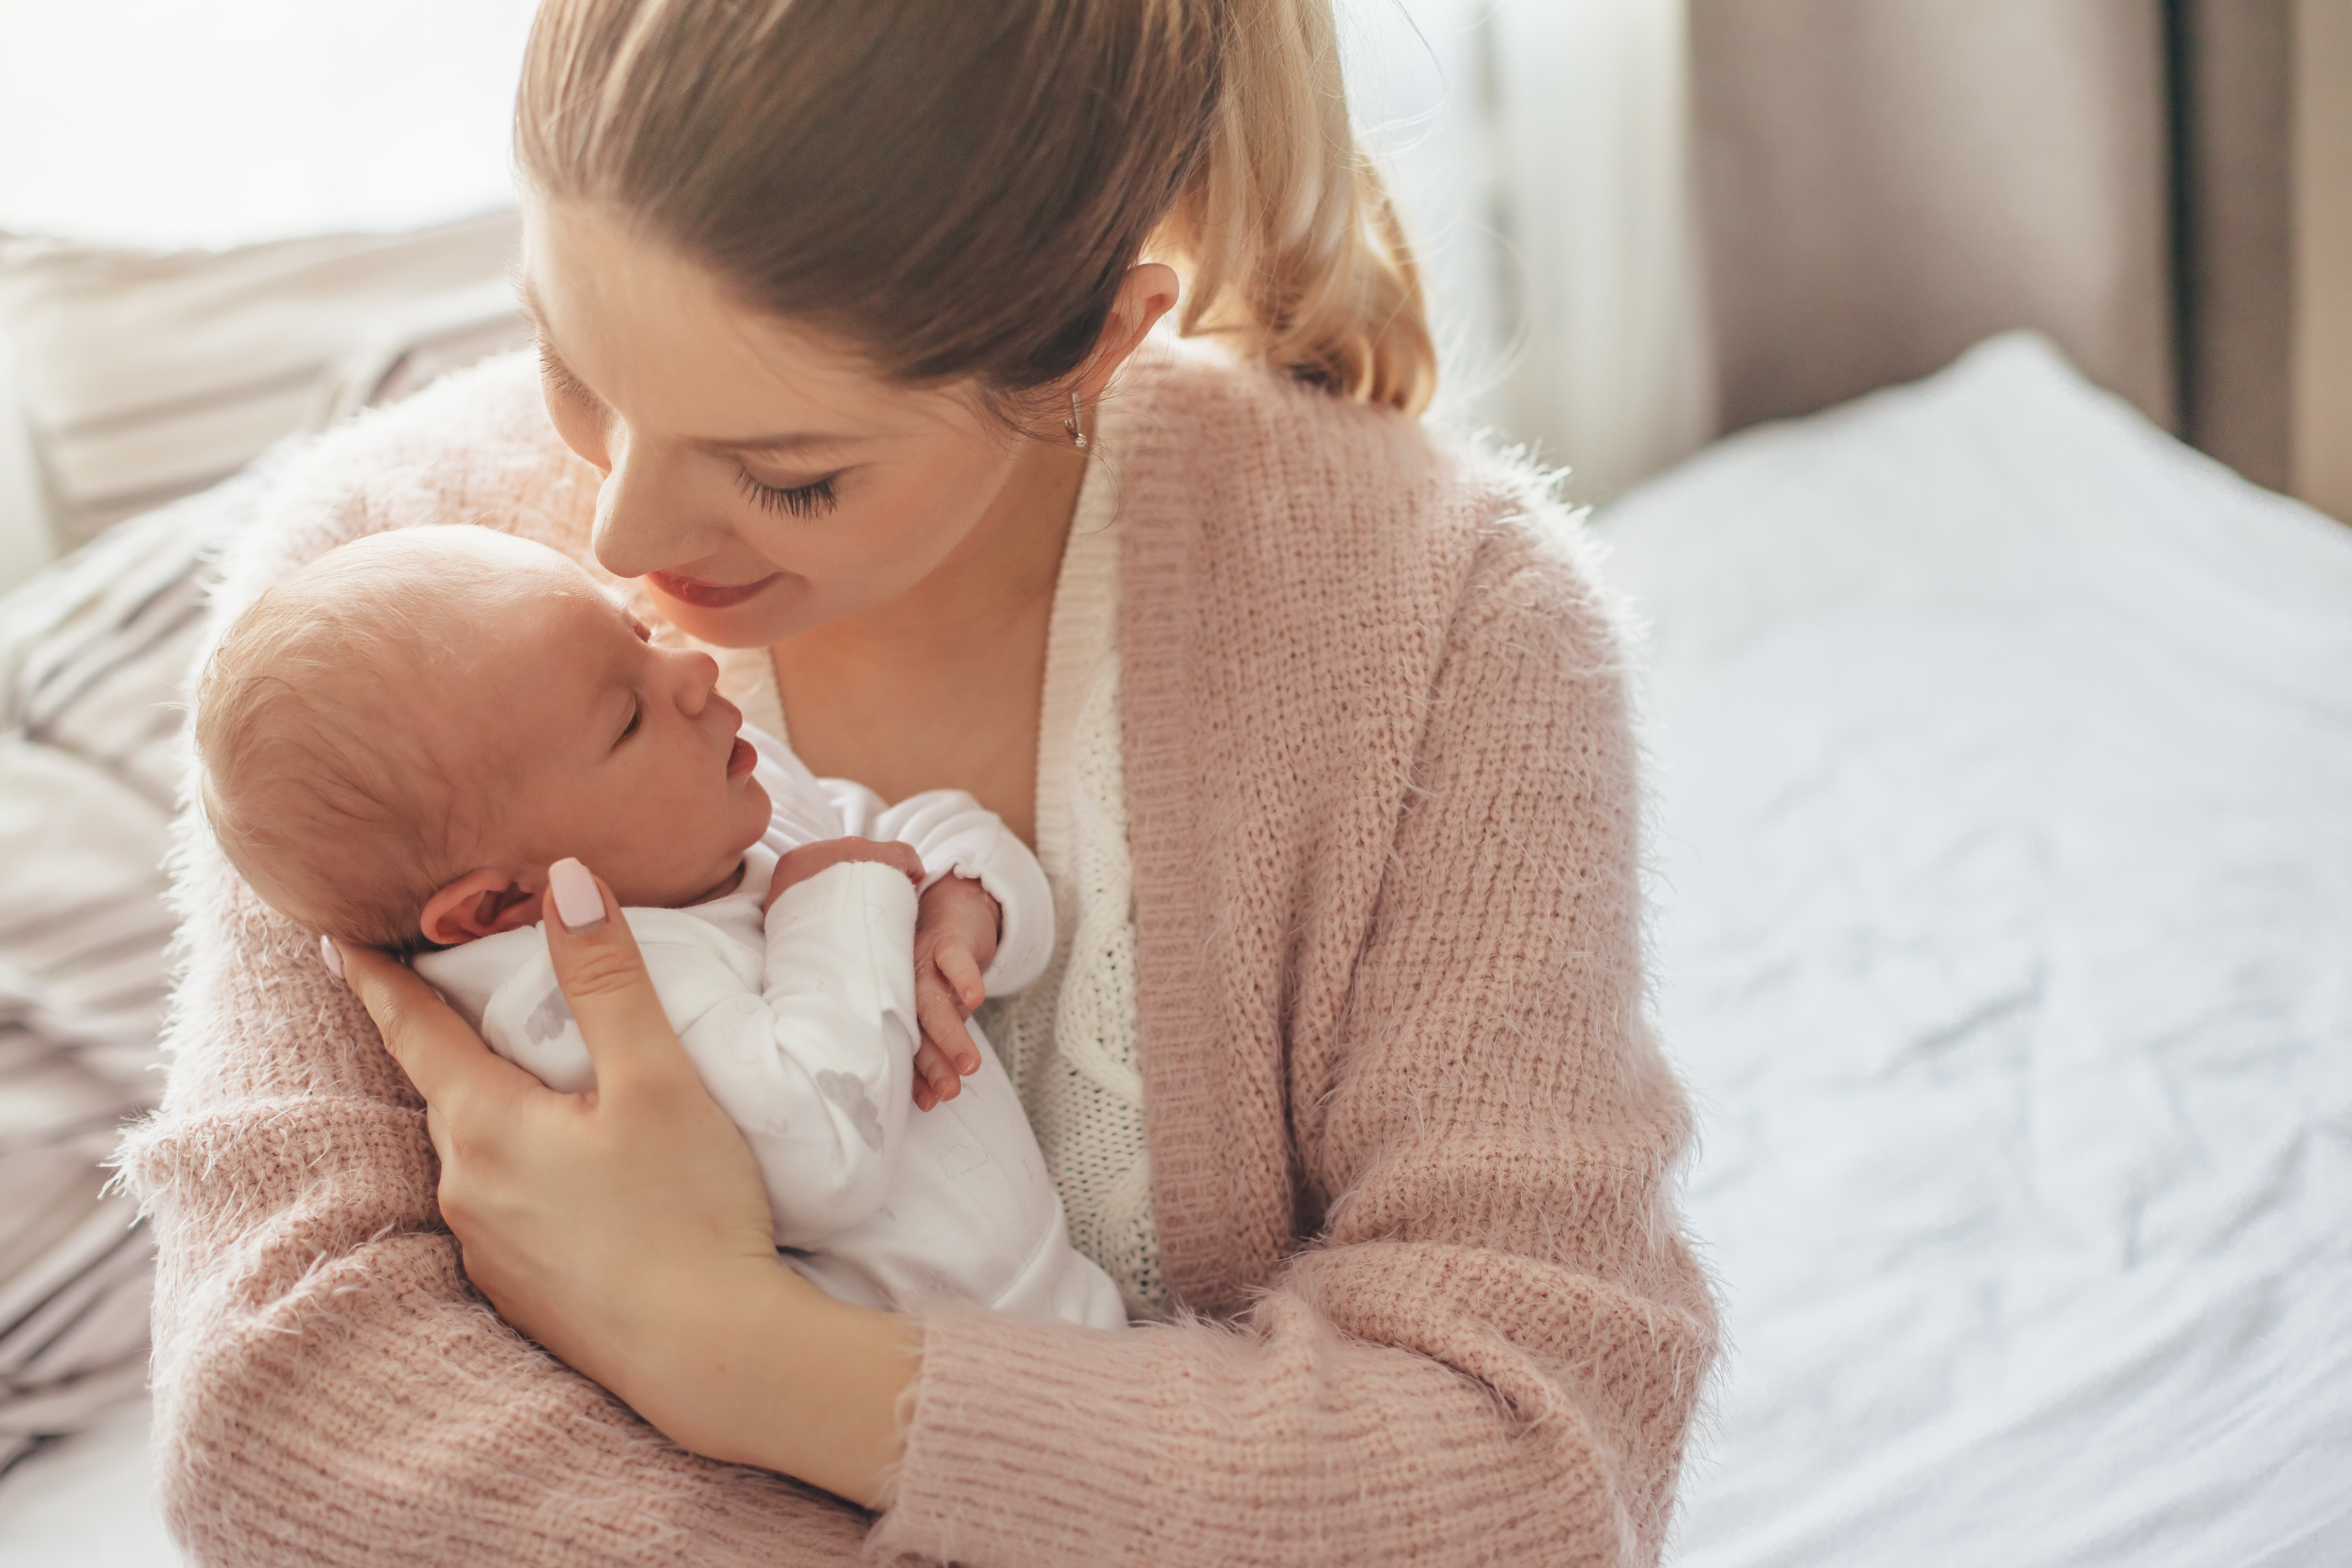 Mère tenant son nouveau-né | Source : Shutterstock